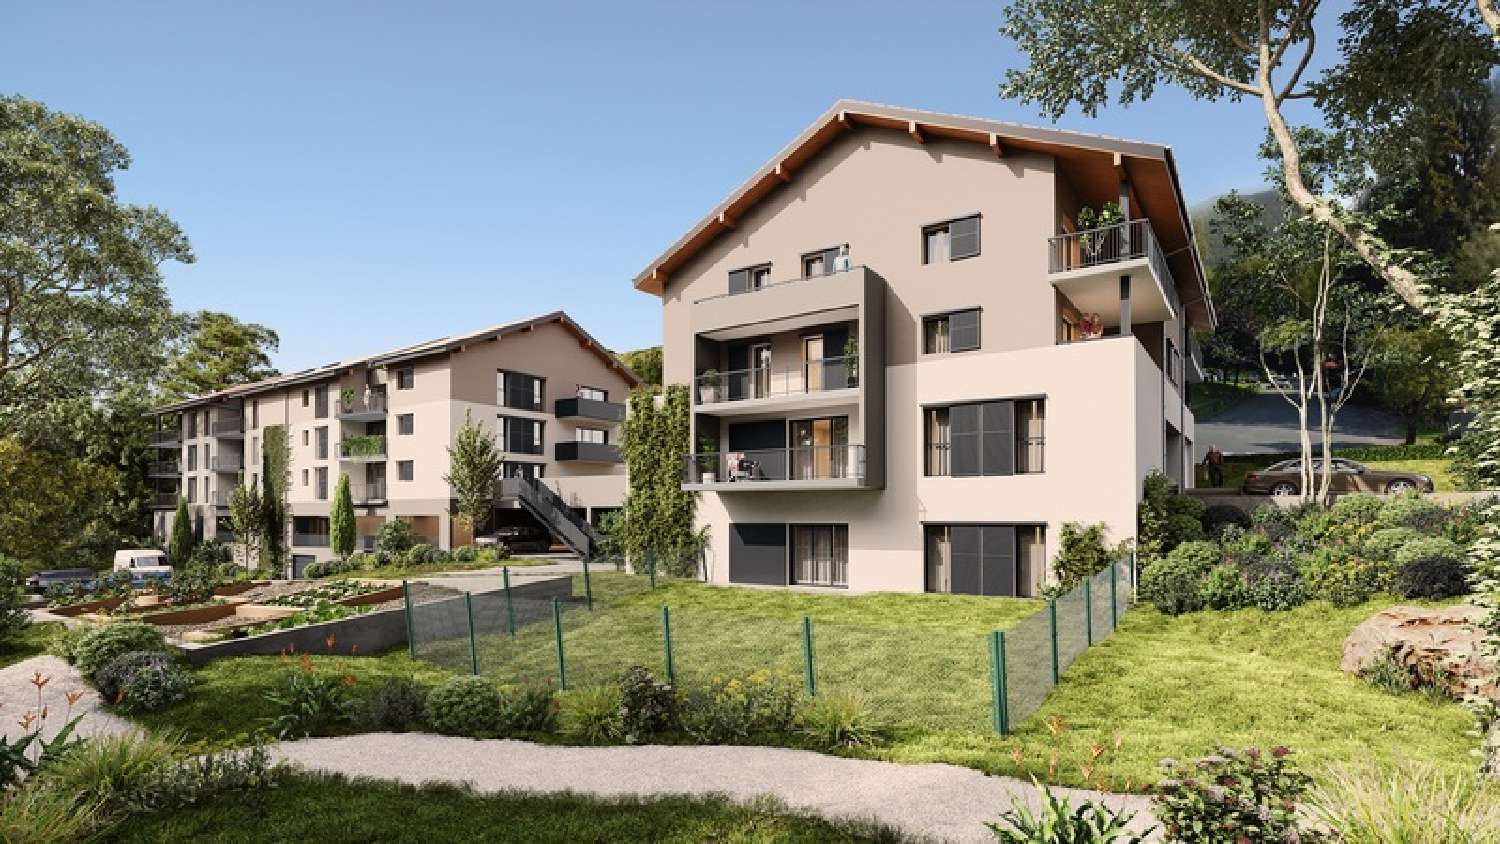  à vendre appartement Villaz Haute-Savoie 3